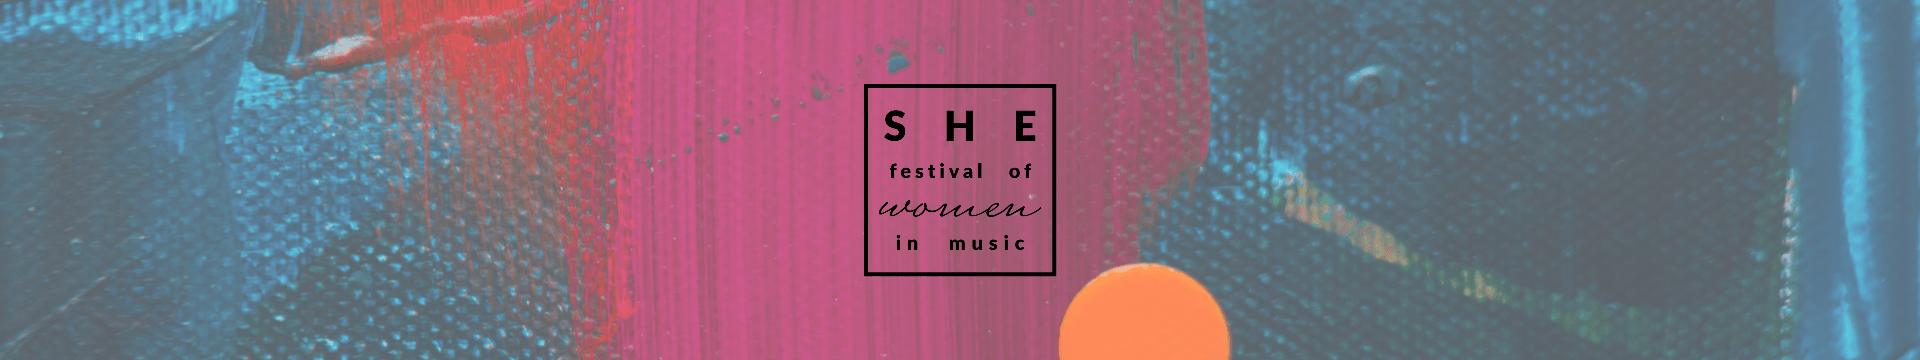 SHE Festival of Women in Music LOGO